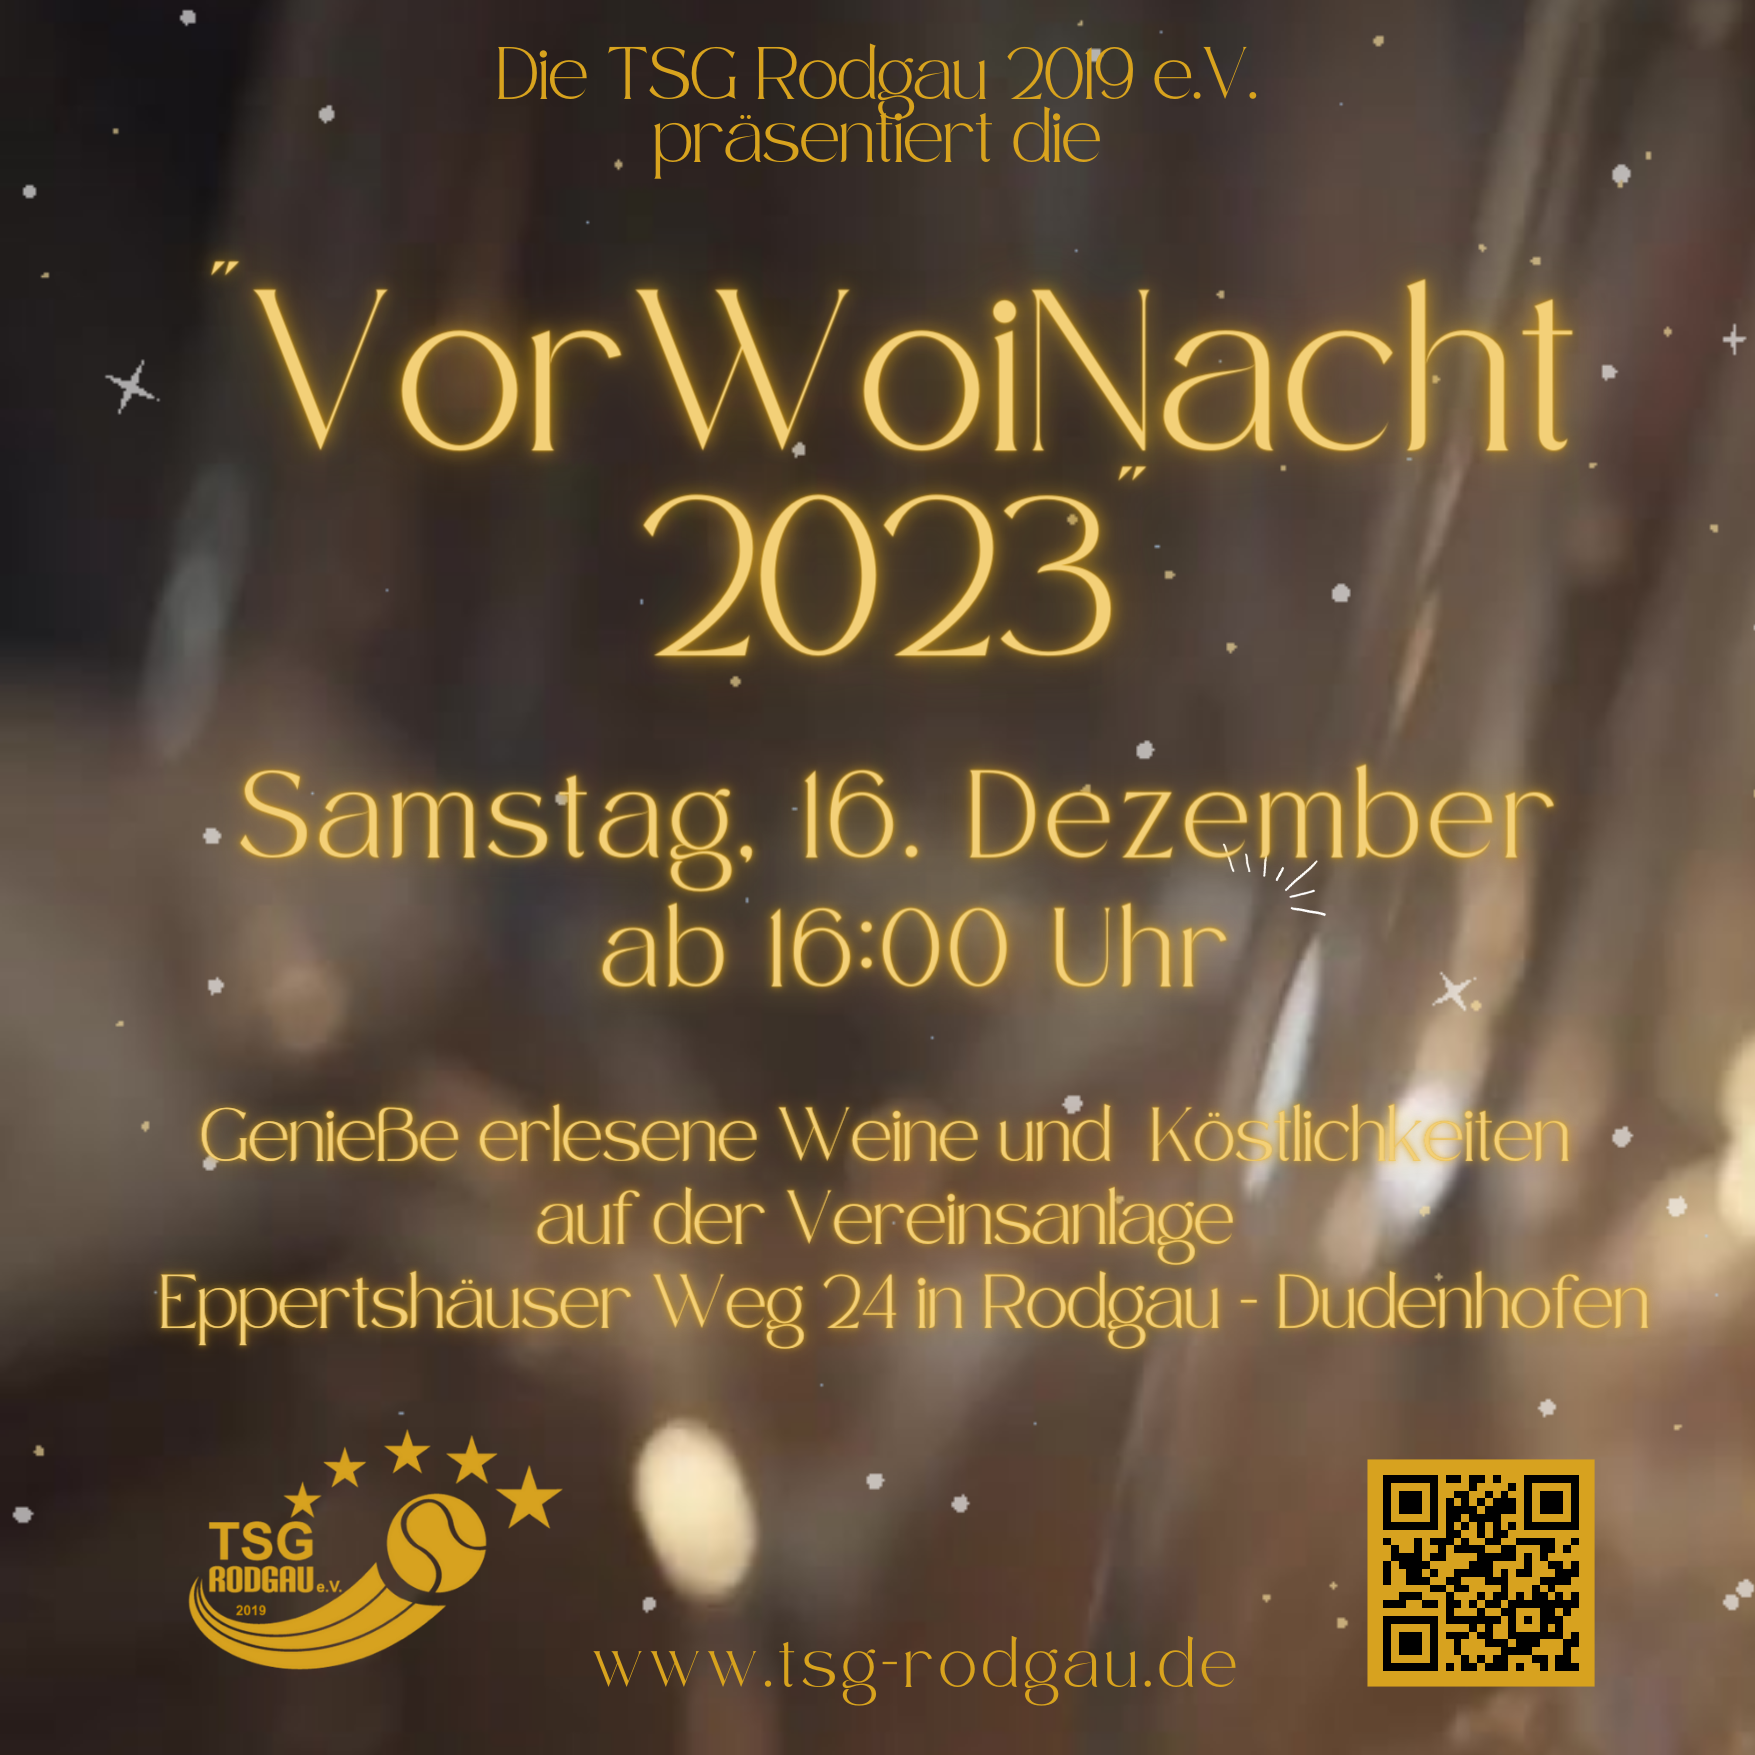 Bereits zum zweiten Mal findet am Samstag, 16. Dezember 2023 ab 16:00 Uhr die VorWoinacht auf unserer Vereinsanlage, Eppertshäuser Weg 24 statt.